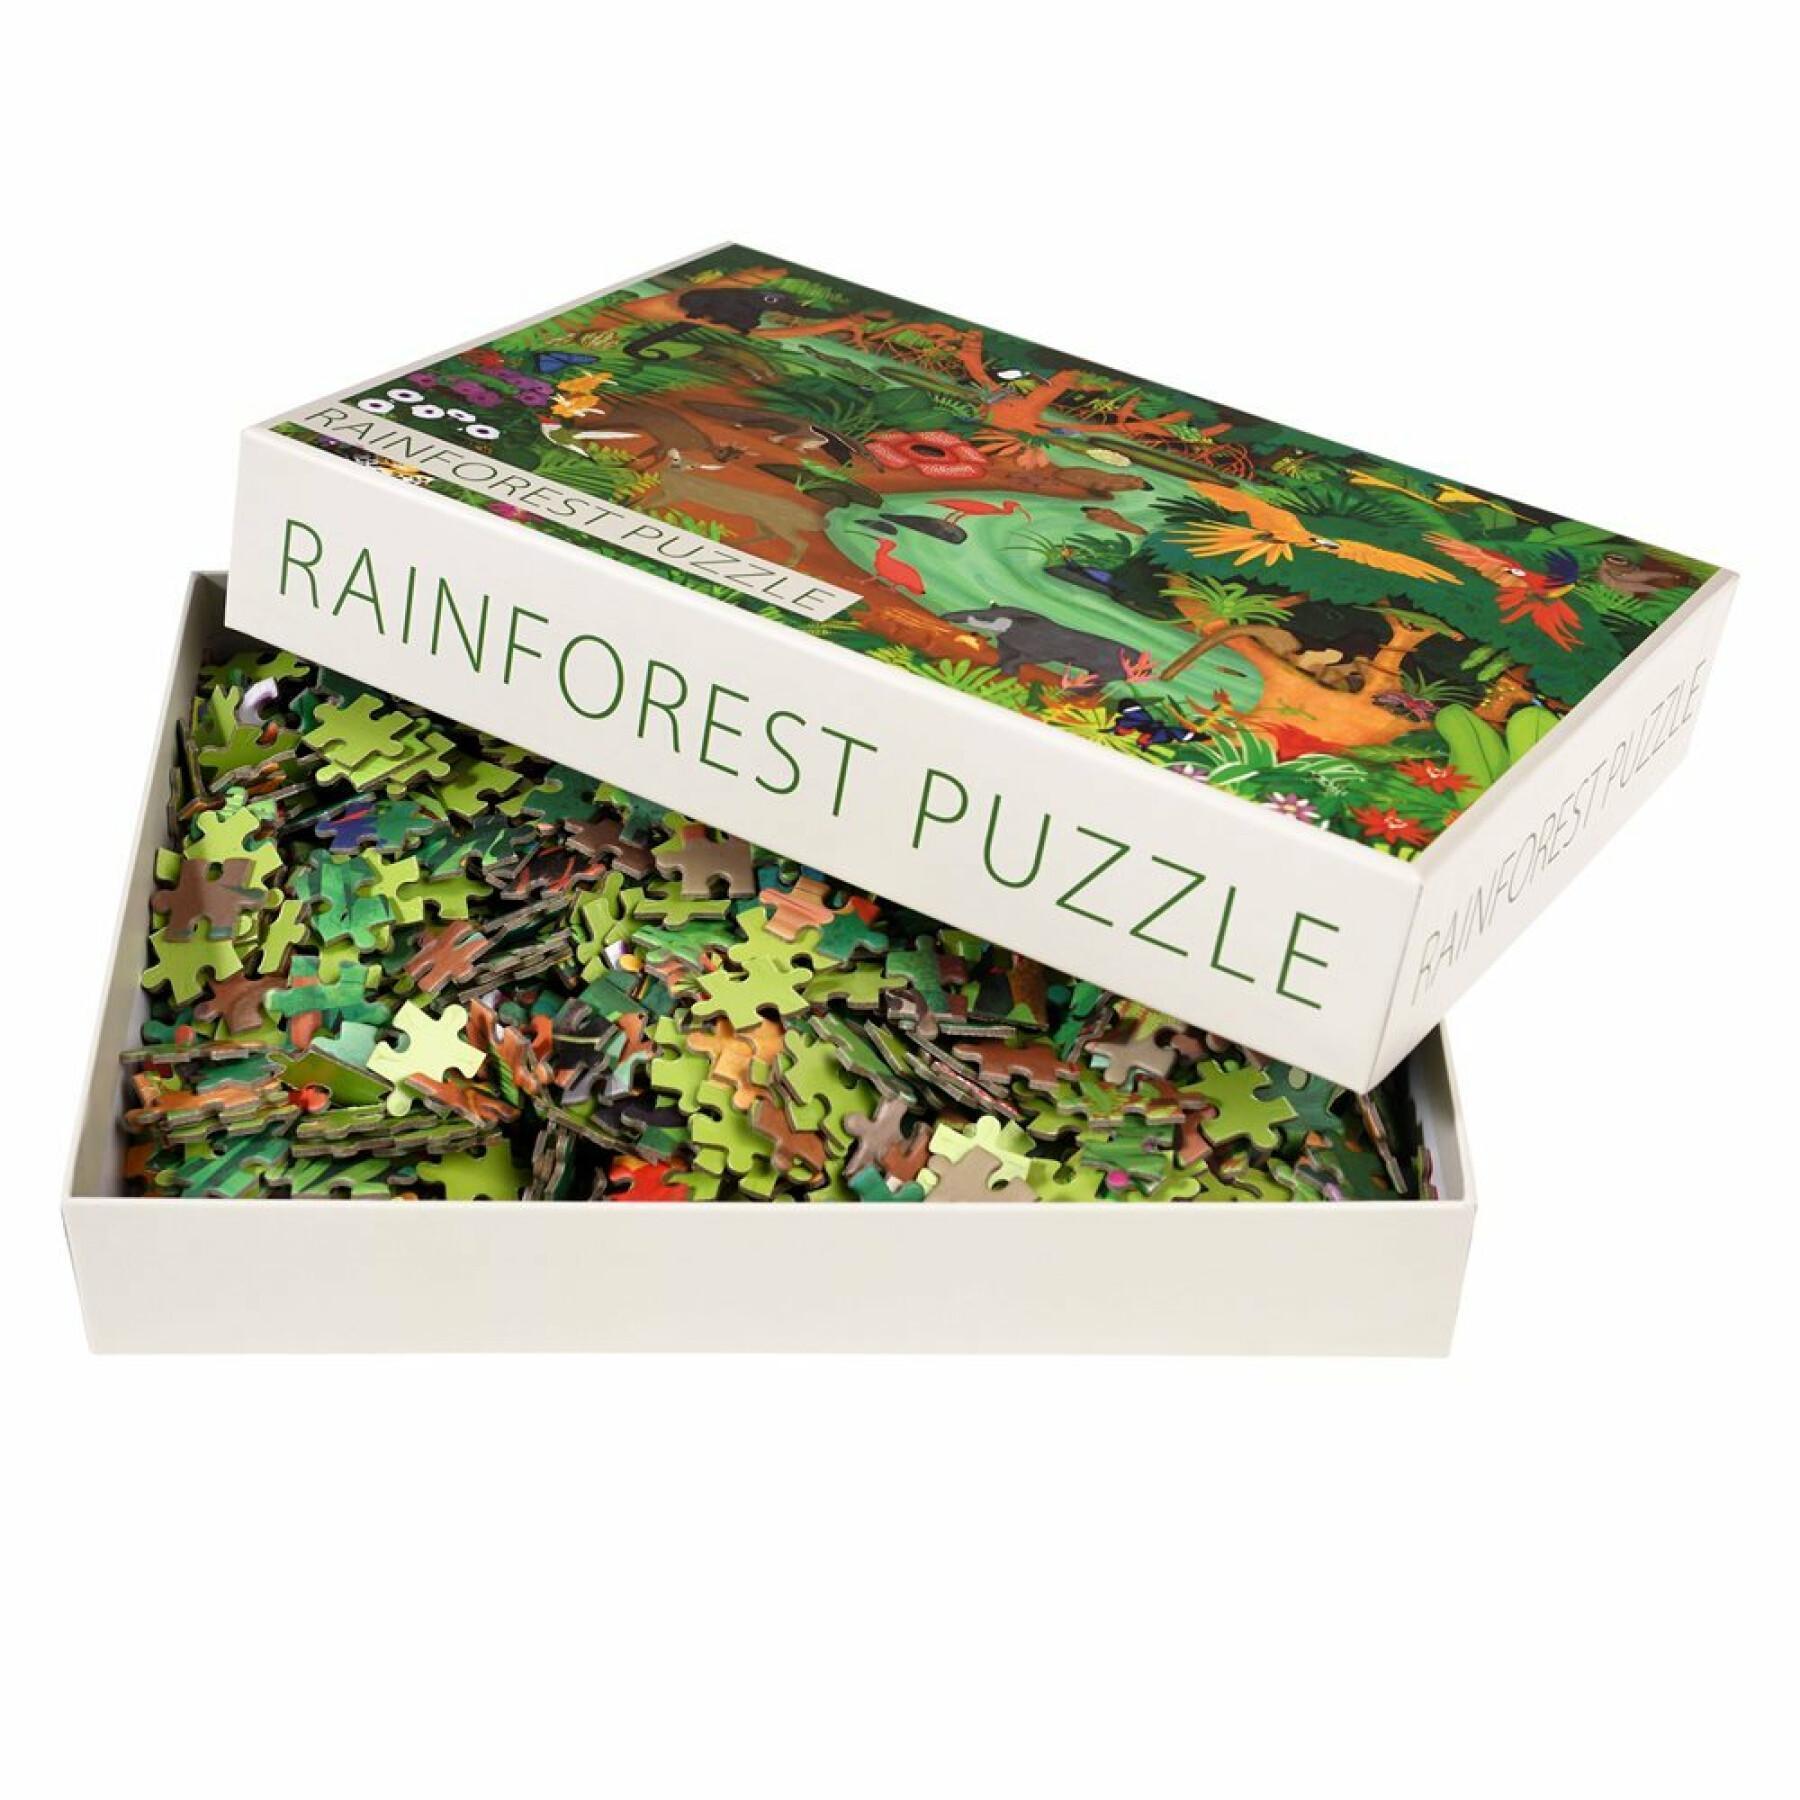 1000 pieces rainforest puzzle Rex London